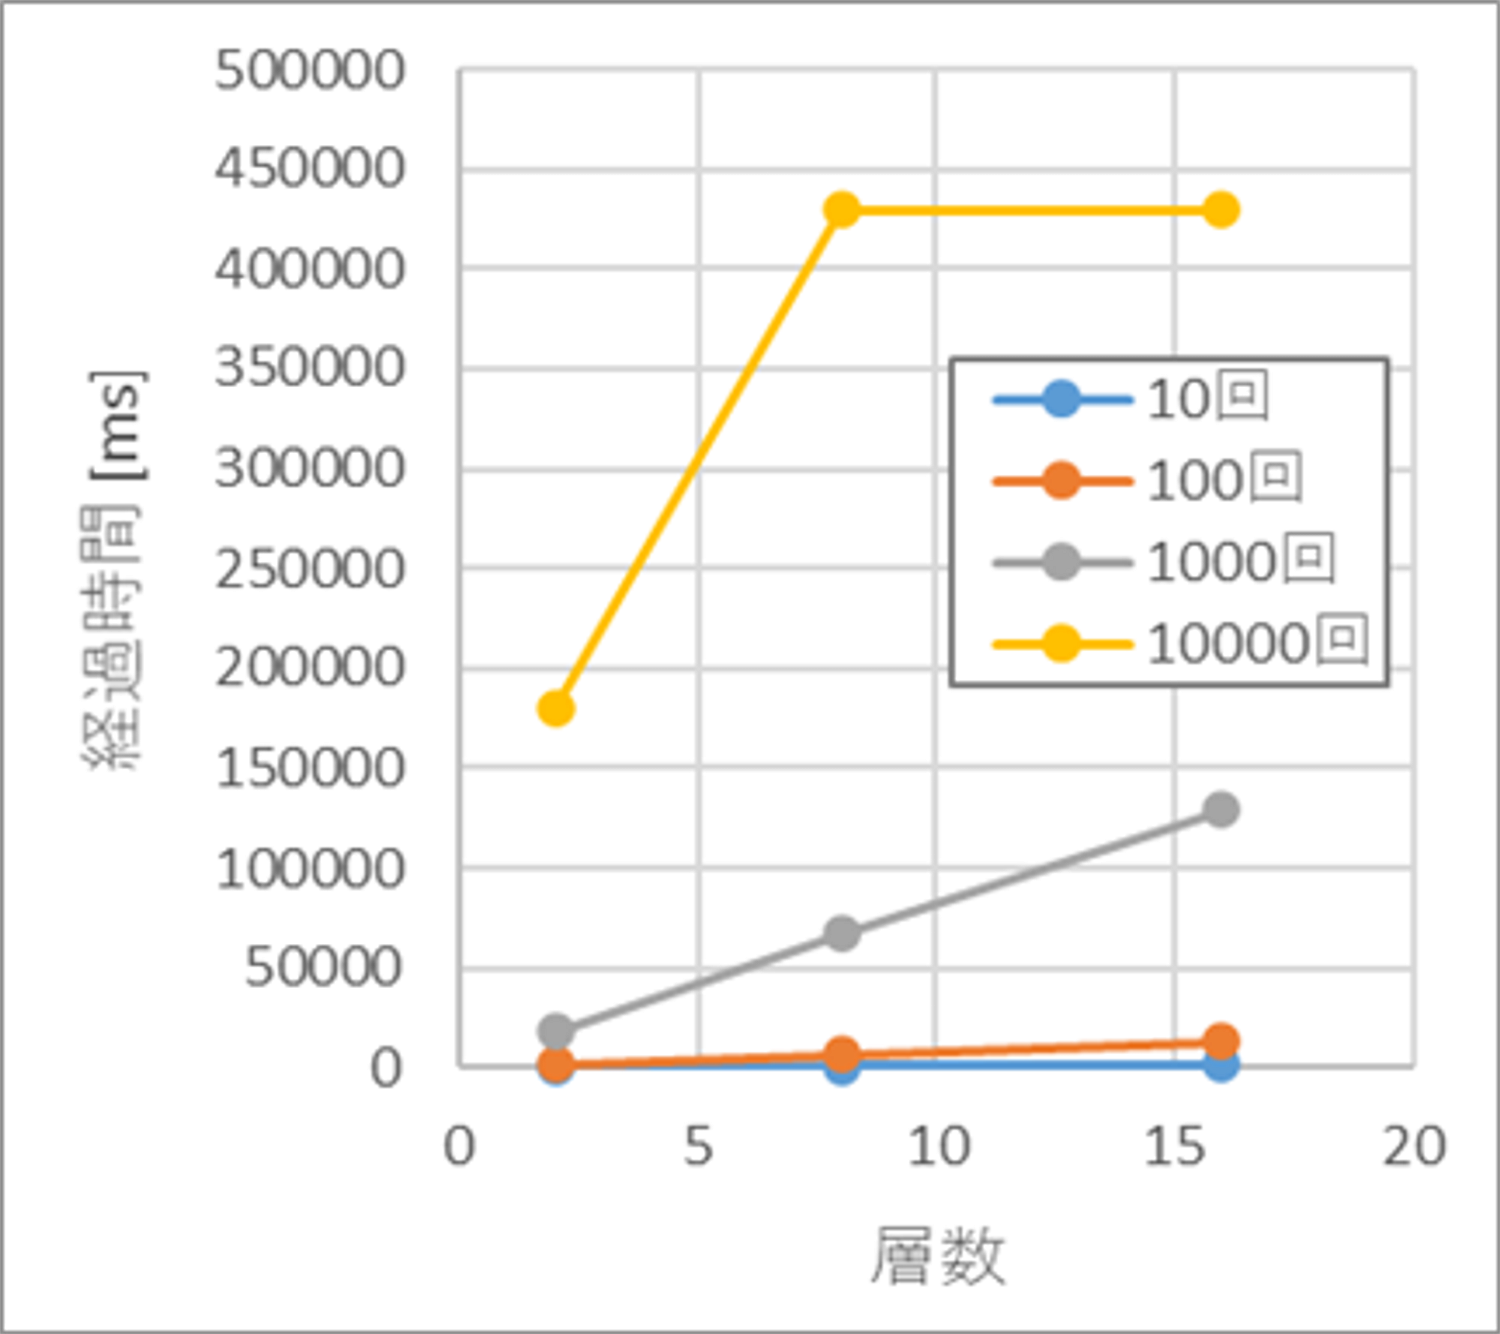 組み込みCPUによるサンプリング実行時の経過時間(ms) (100×100画素)